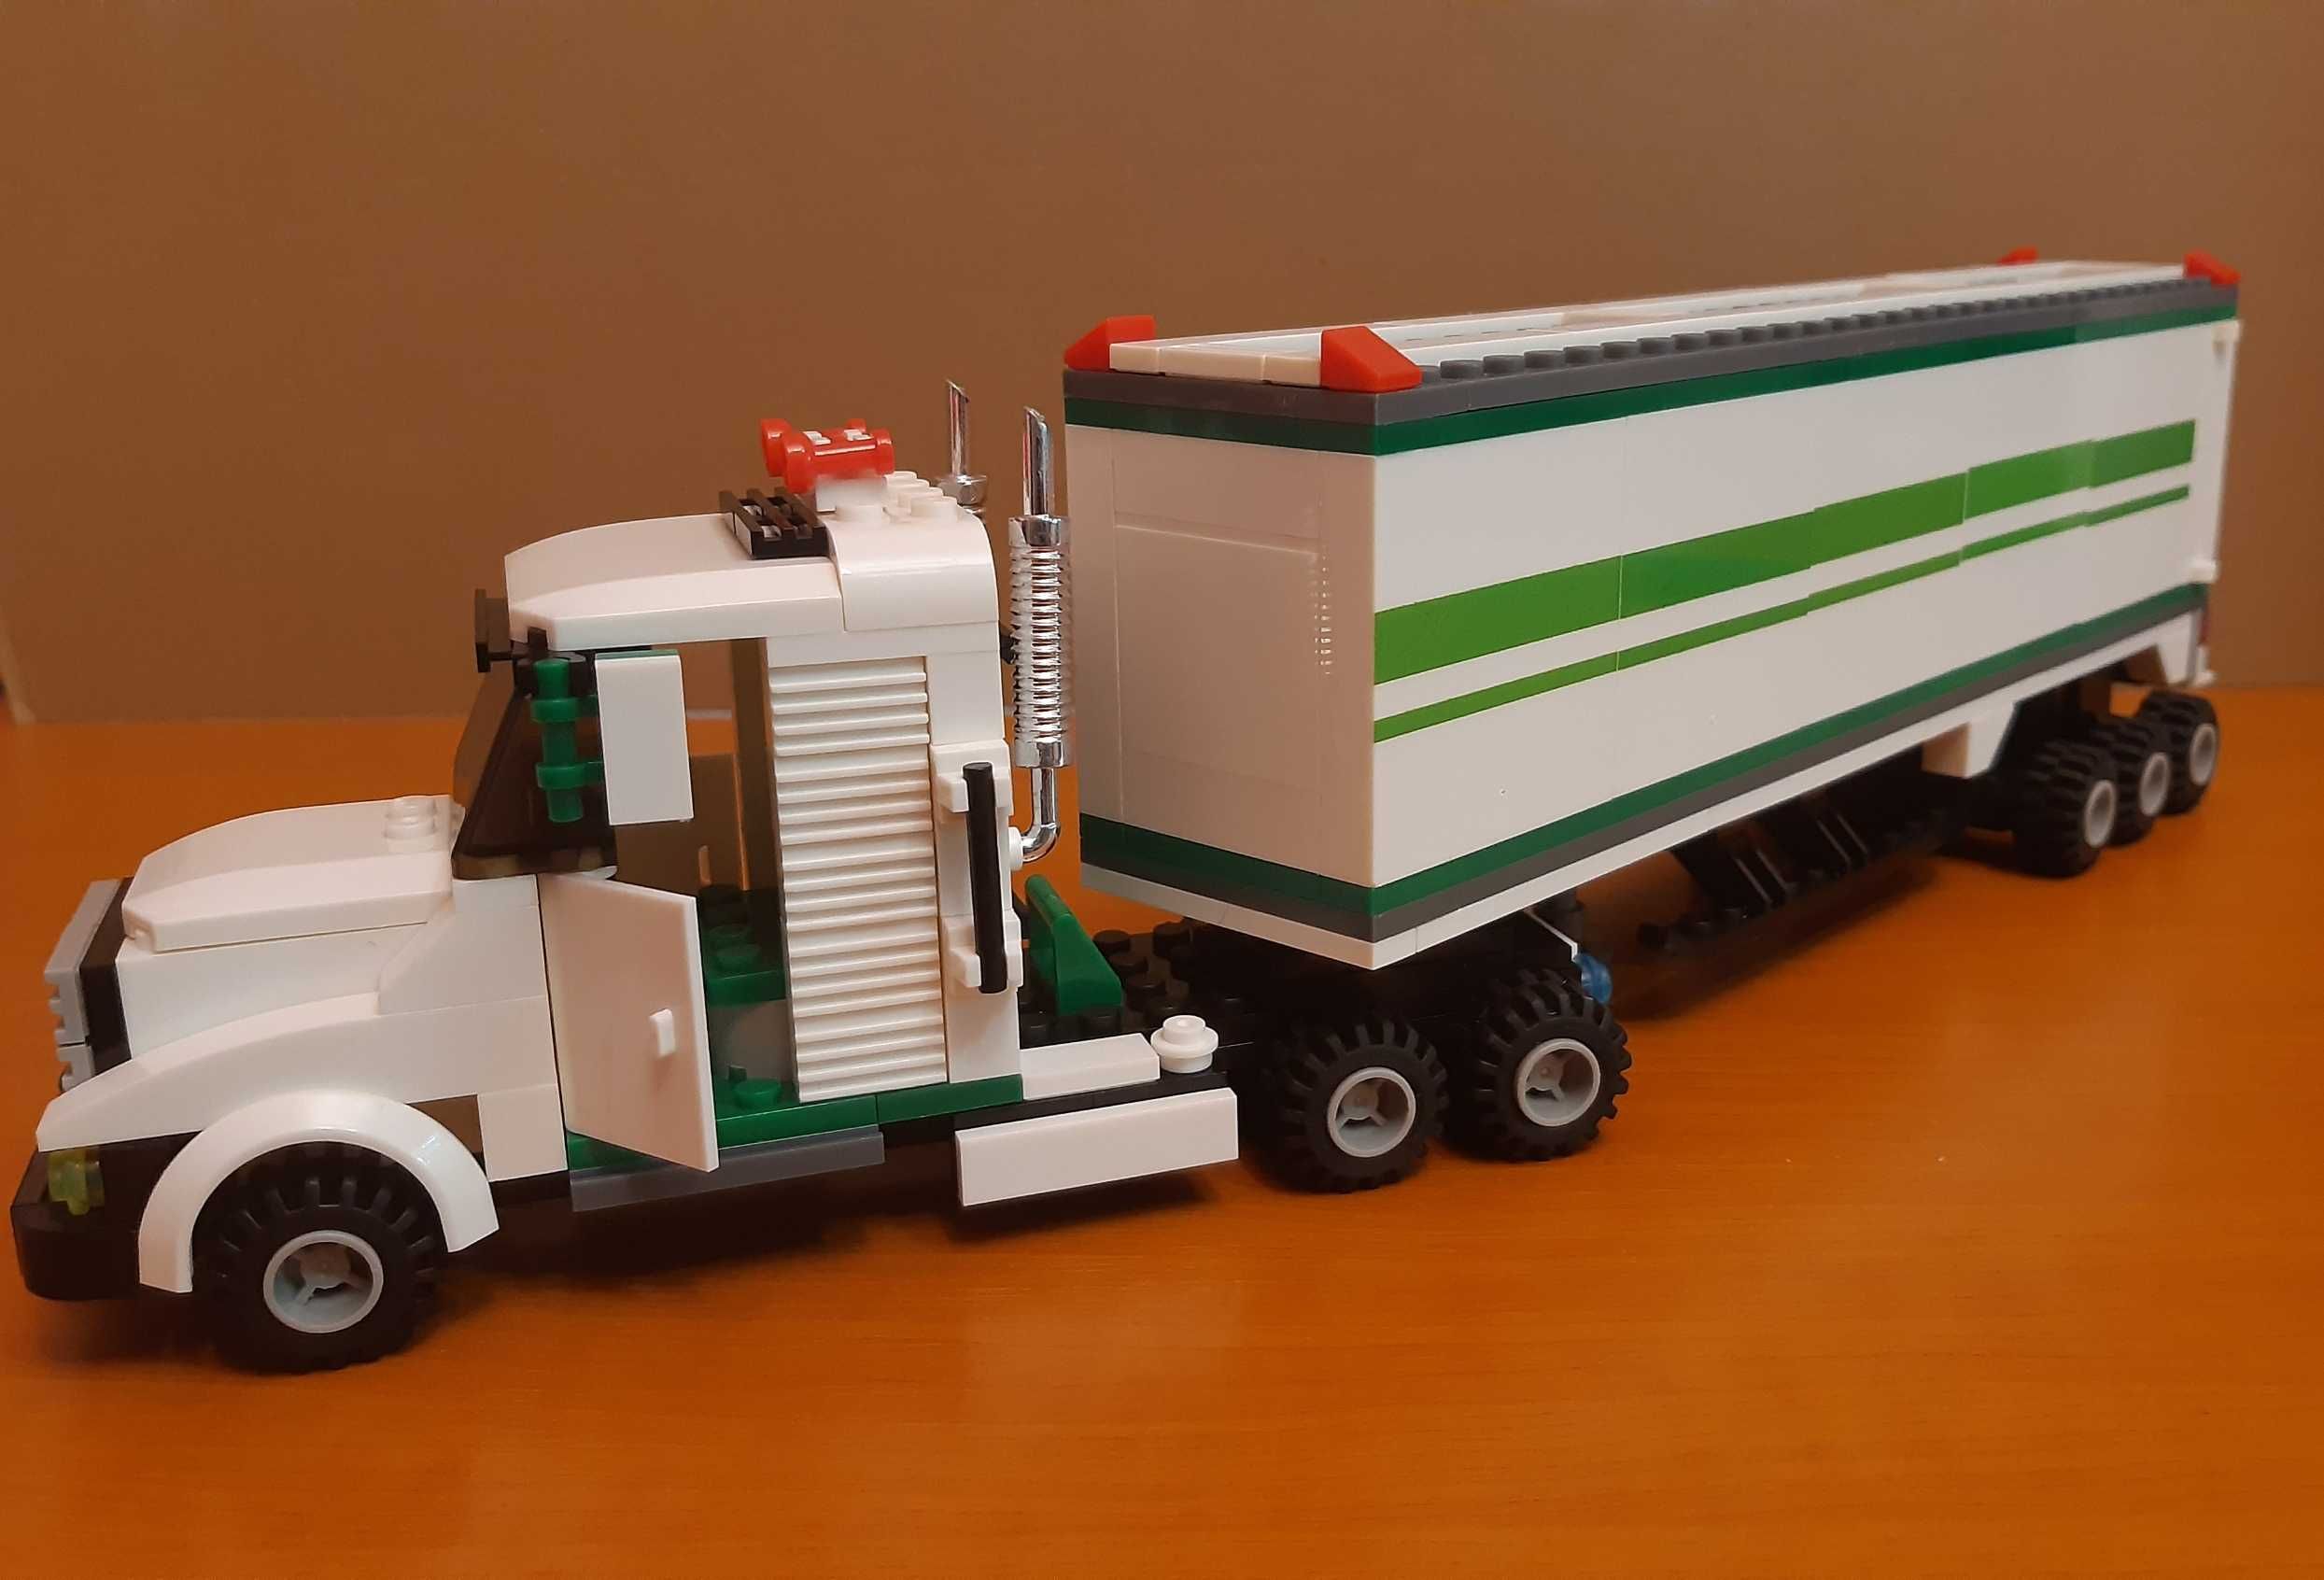 LEGO - Wange Truck Series 37101 | 352 pcs